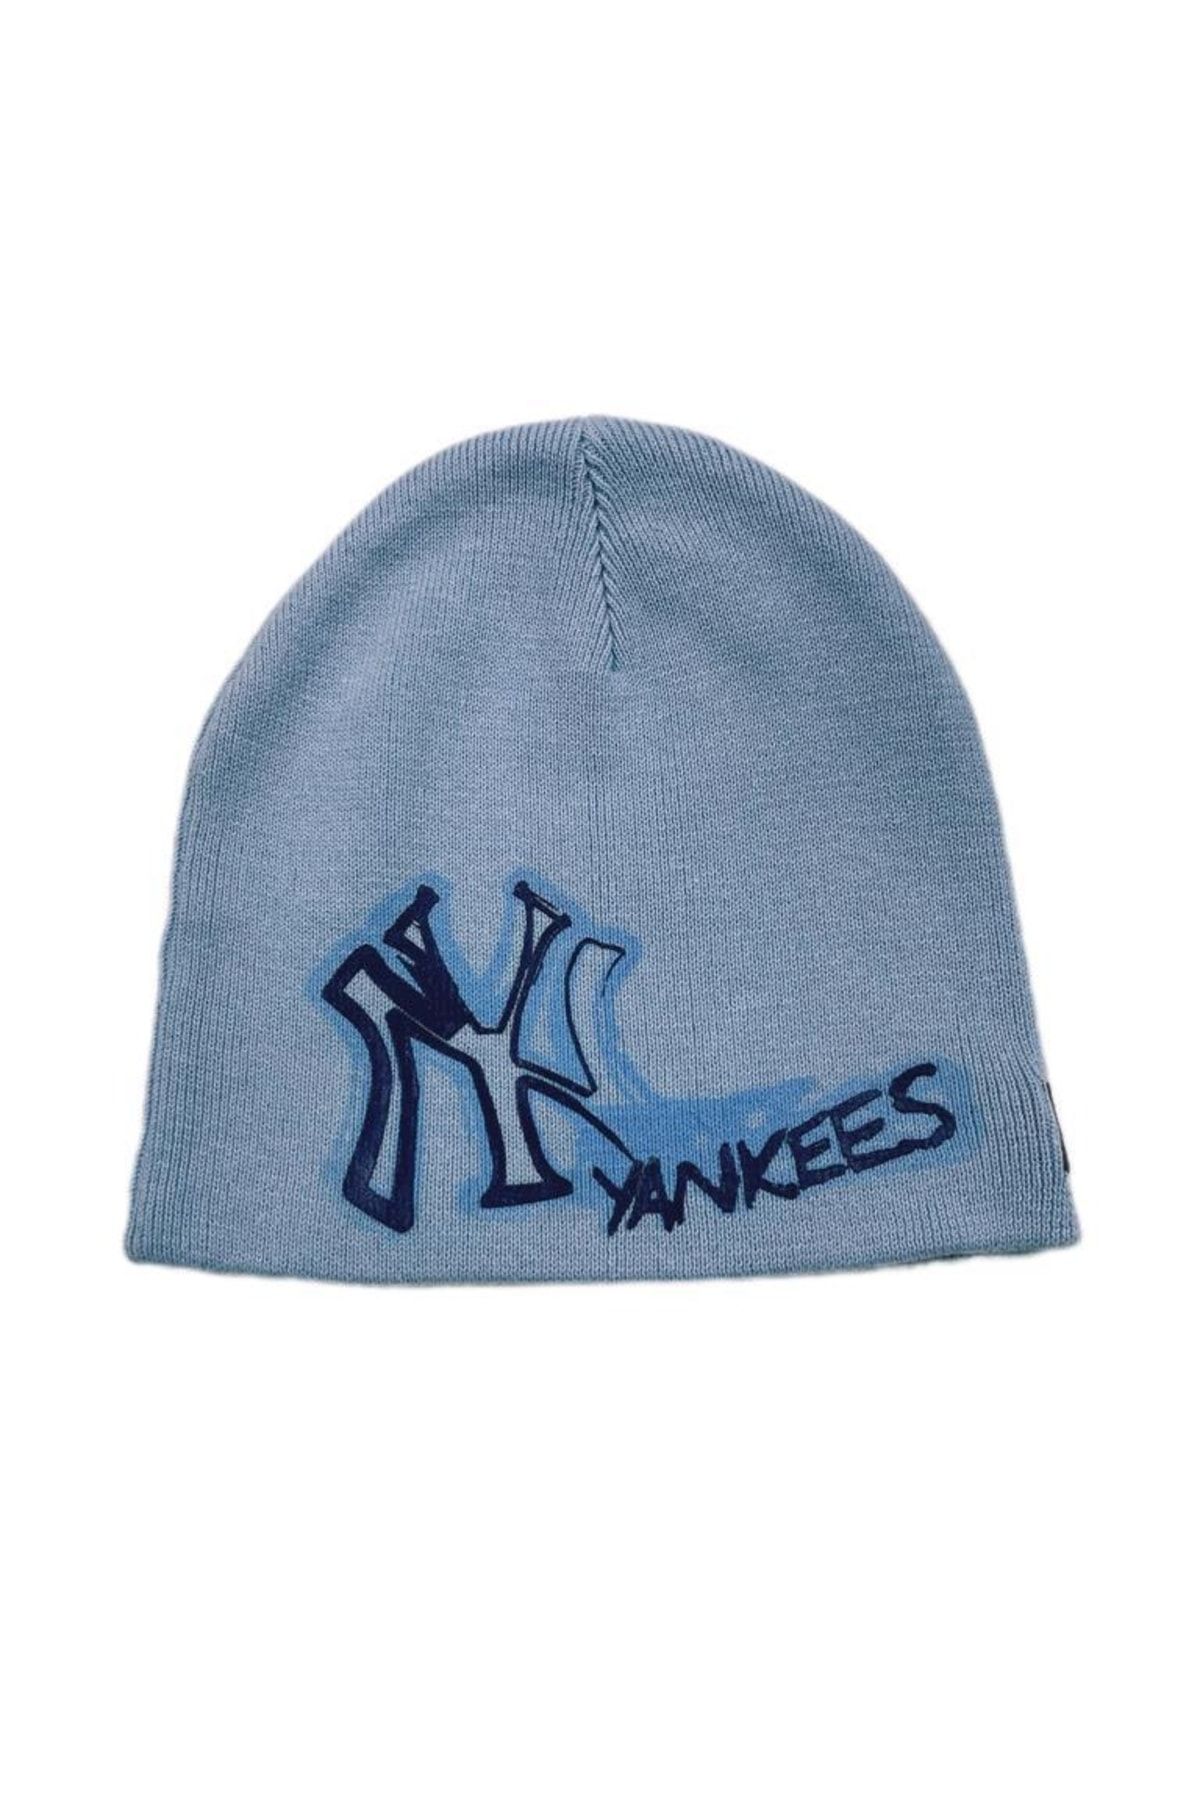 NEW ERA Ny Yankees Logo Açık Mavi Erkek Çocuk Bere